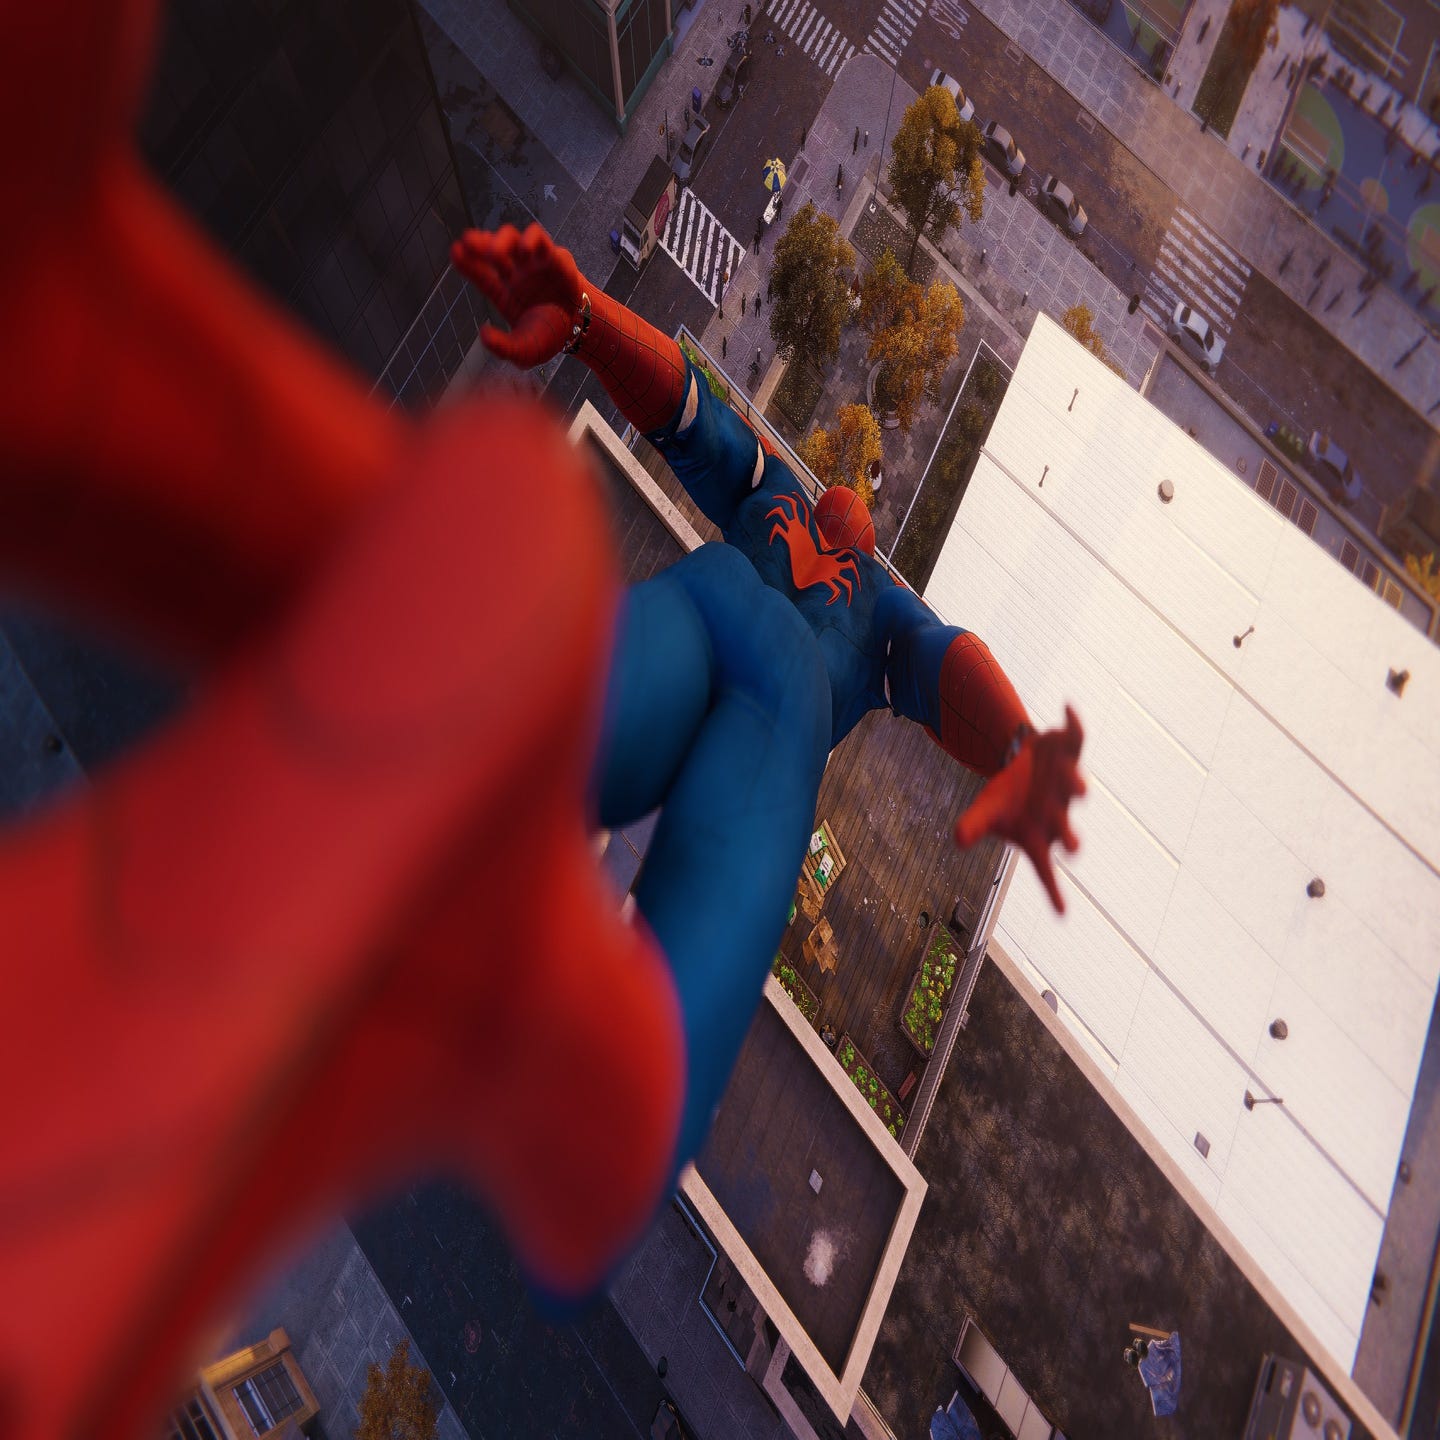 Marvel's Spider-Man Remastered (PC) review - A melhor aranha